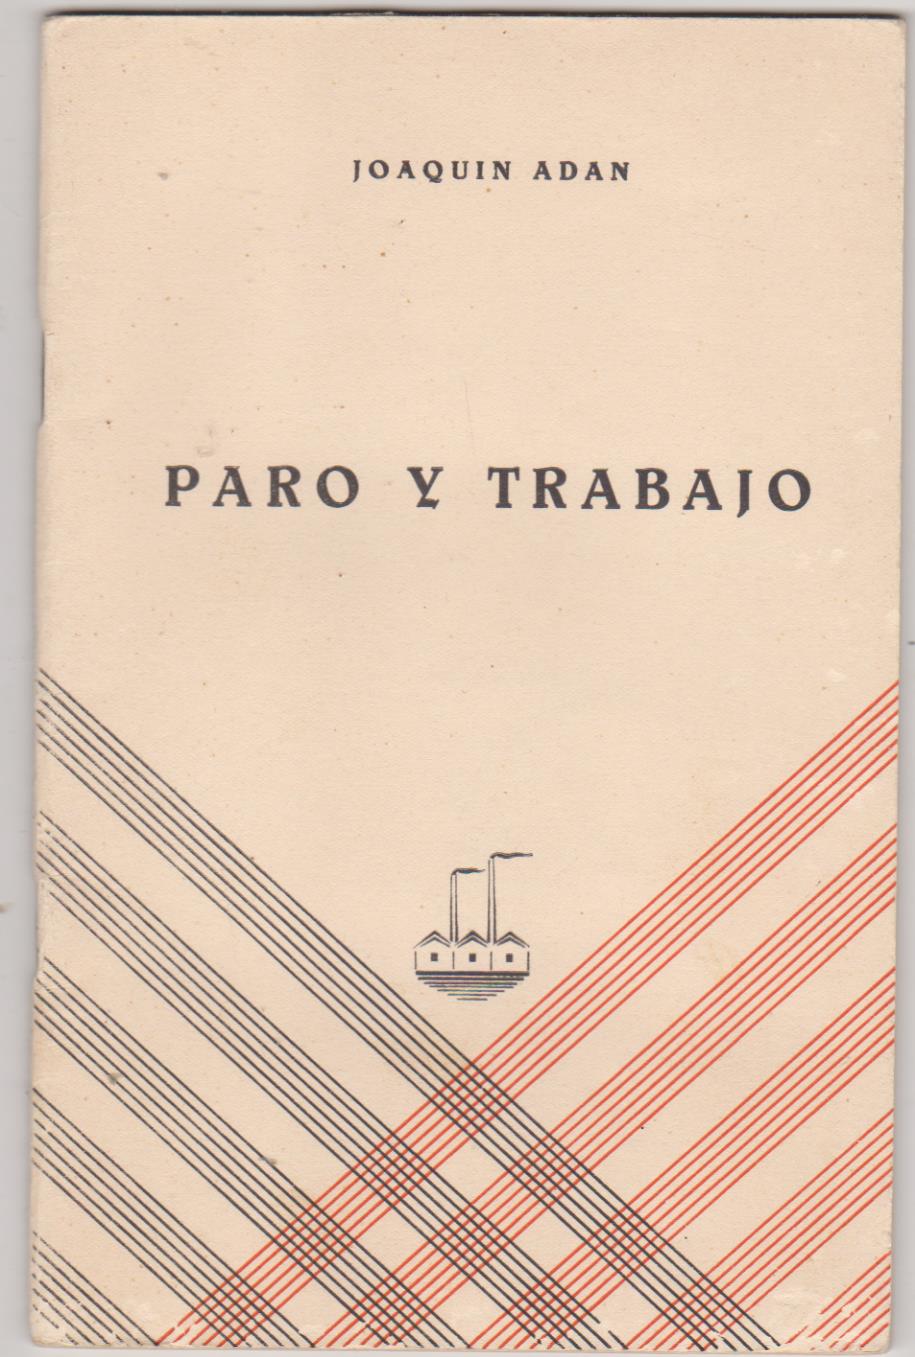 Joaquín Adán. Paro y Trabajo. Mayli. Bilbao 1934